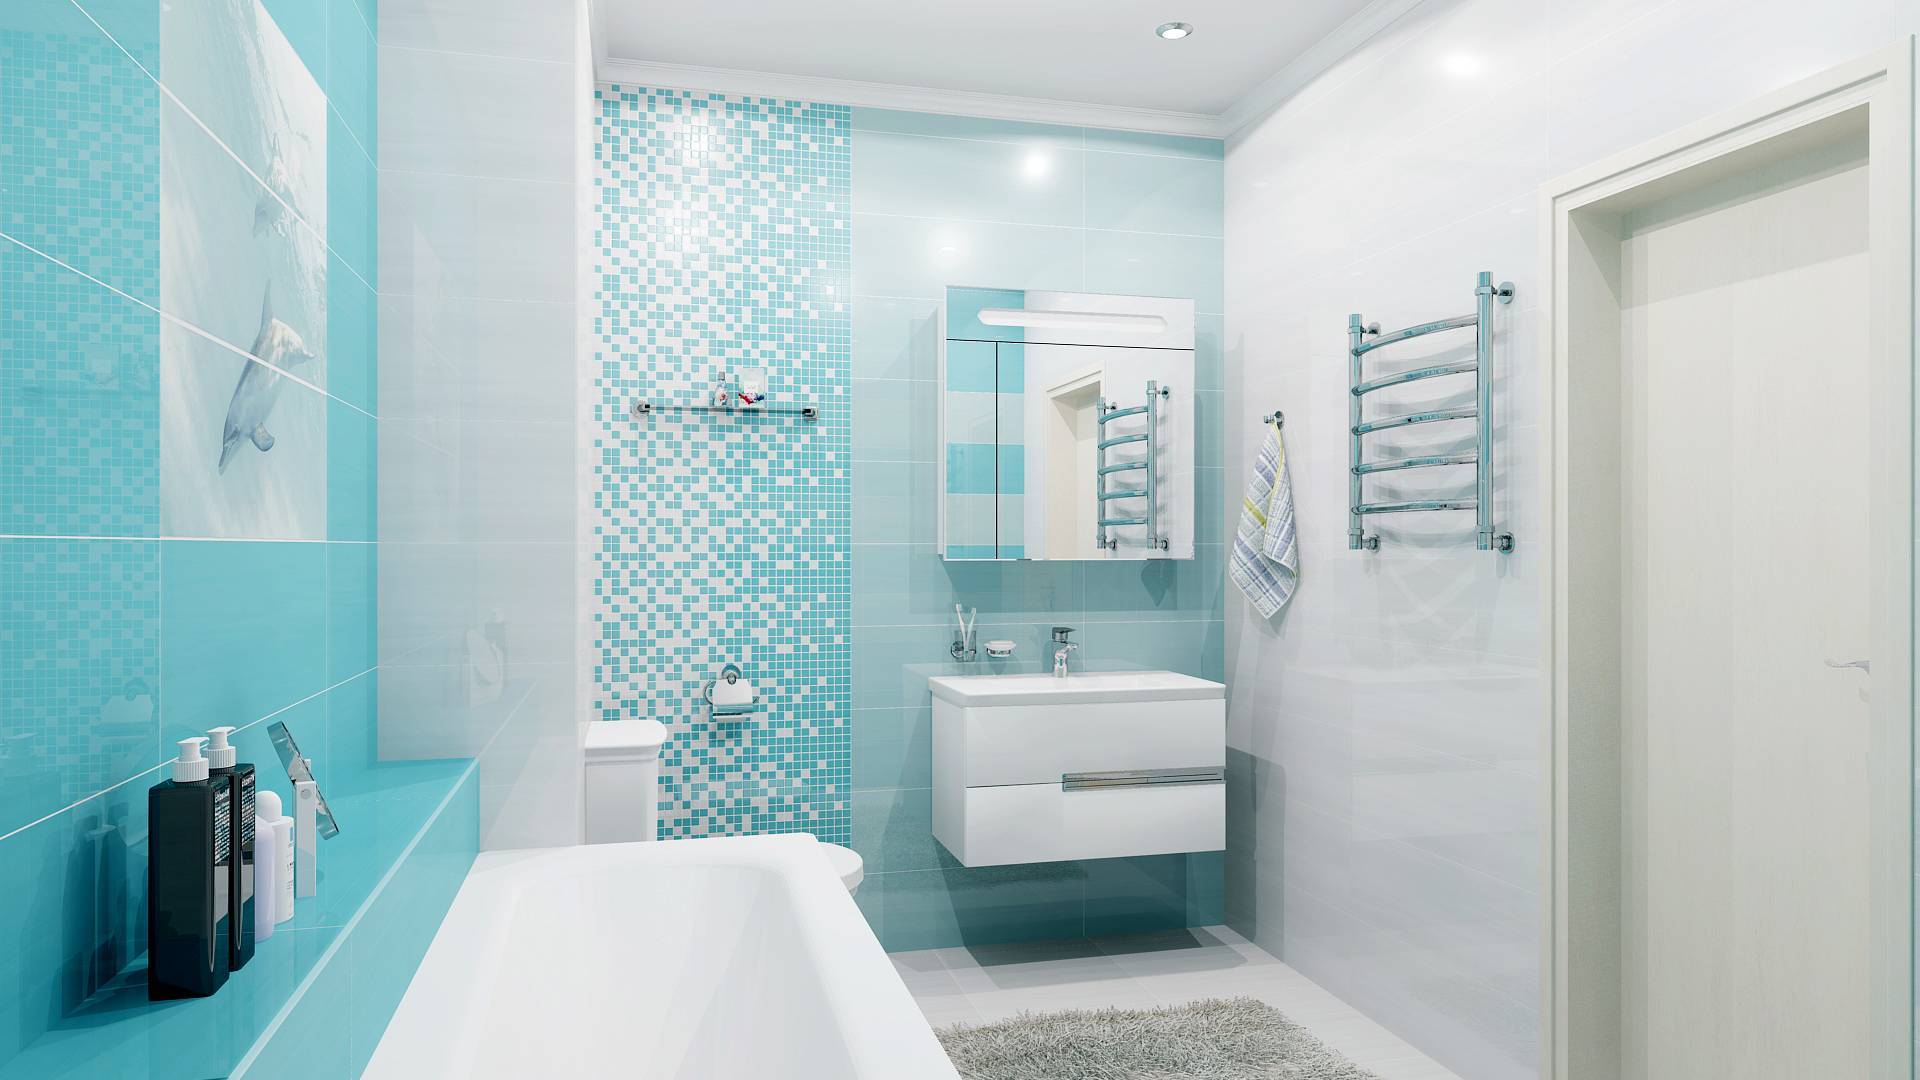 Выбор плитки для маленькой ванной. фото и примеры интерьеров